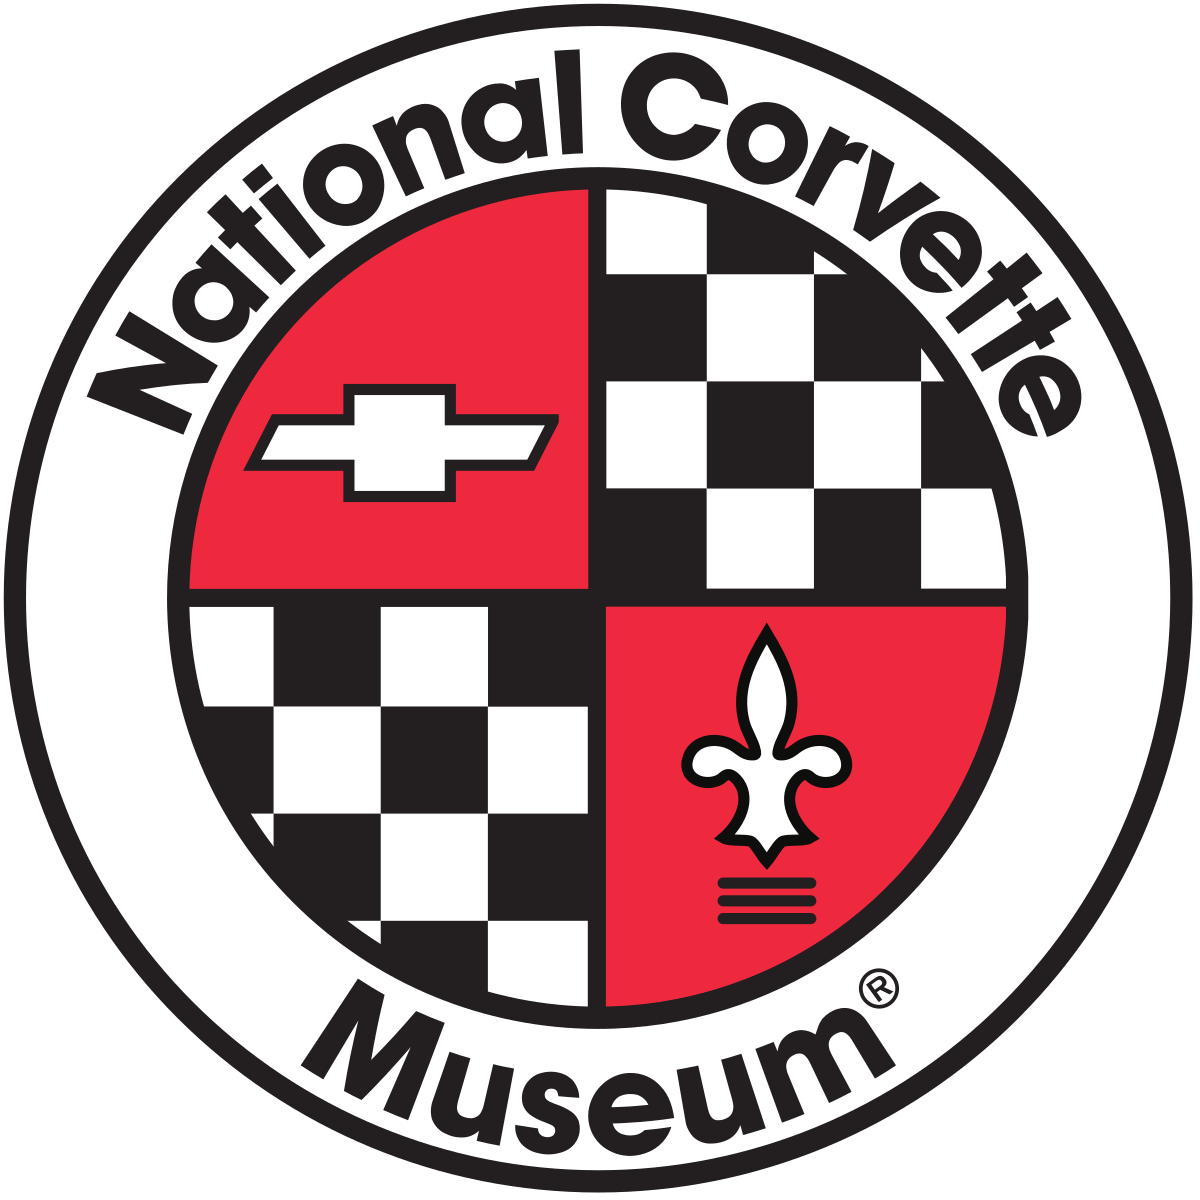 National Corvette Museum Logo